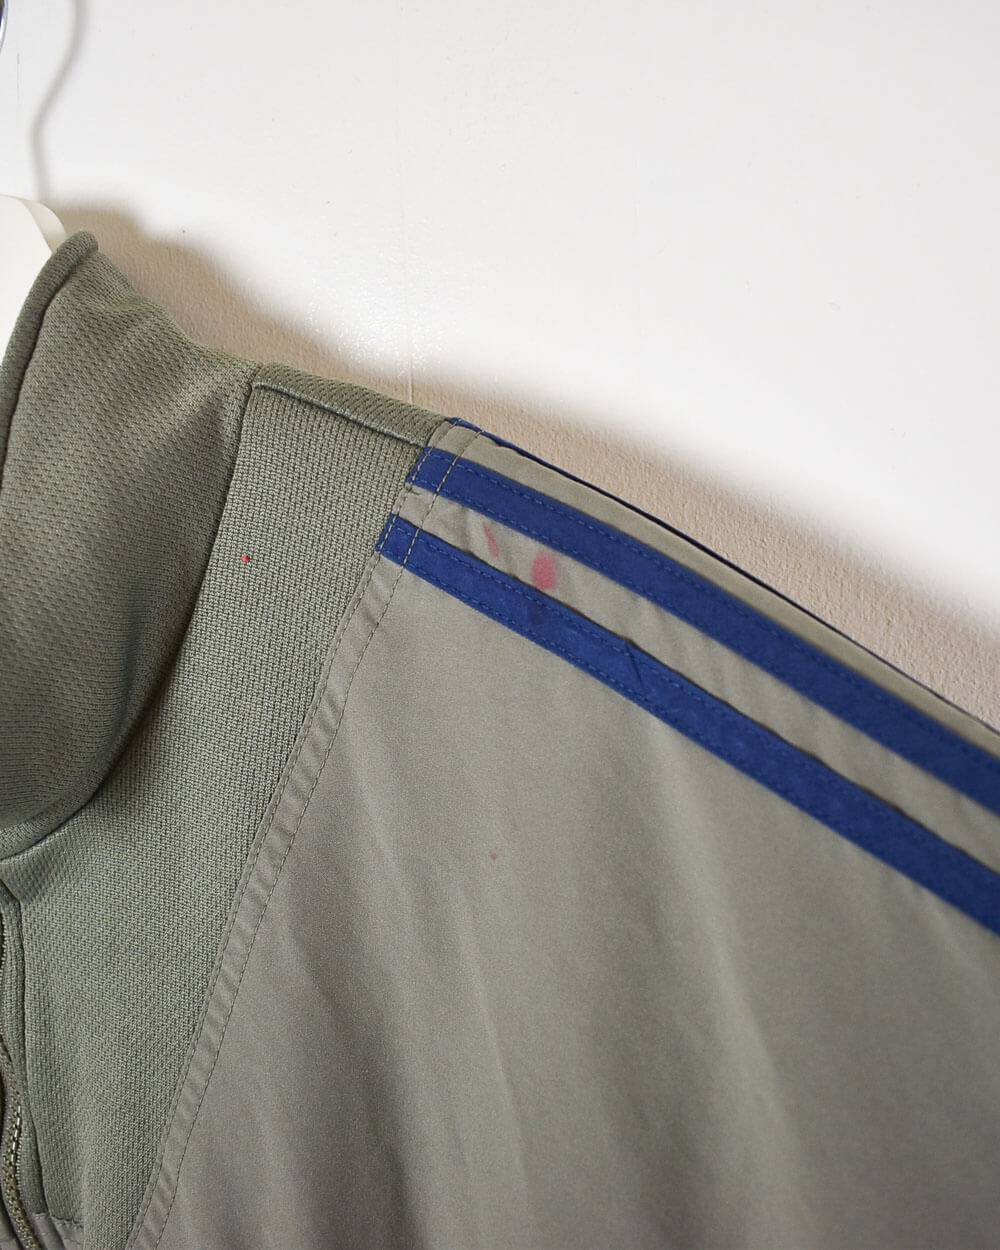 Khaki Adidas Windbreaker Jacket - Large